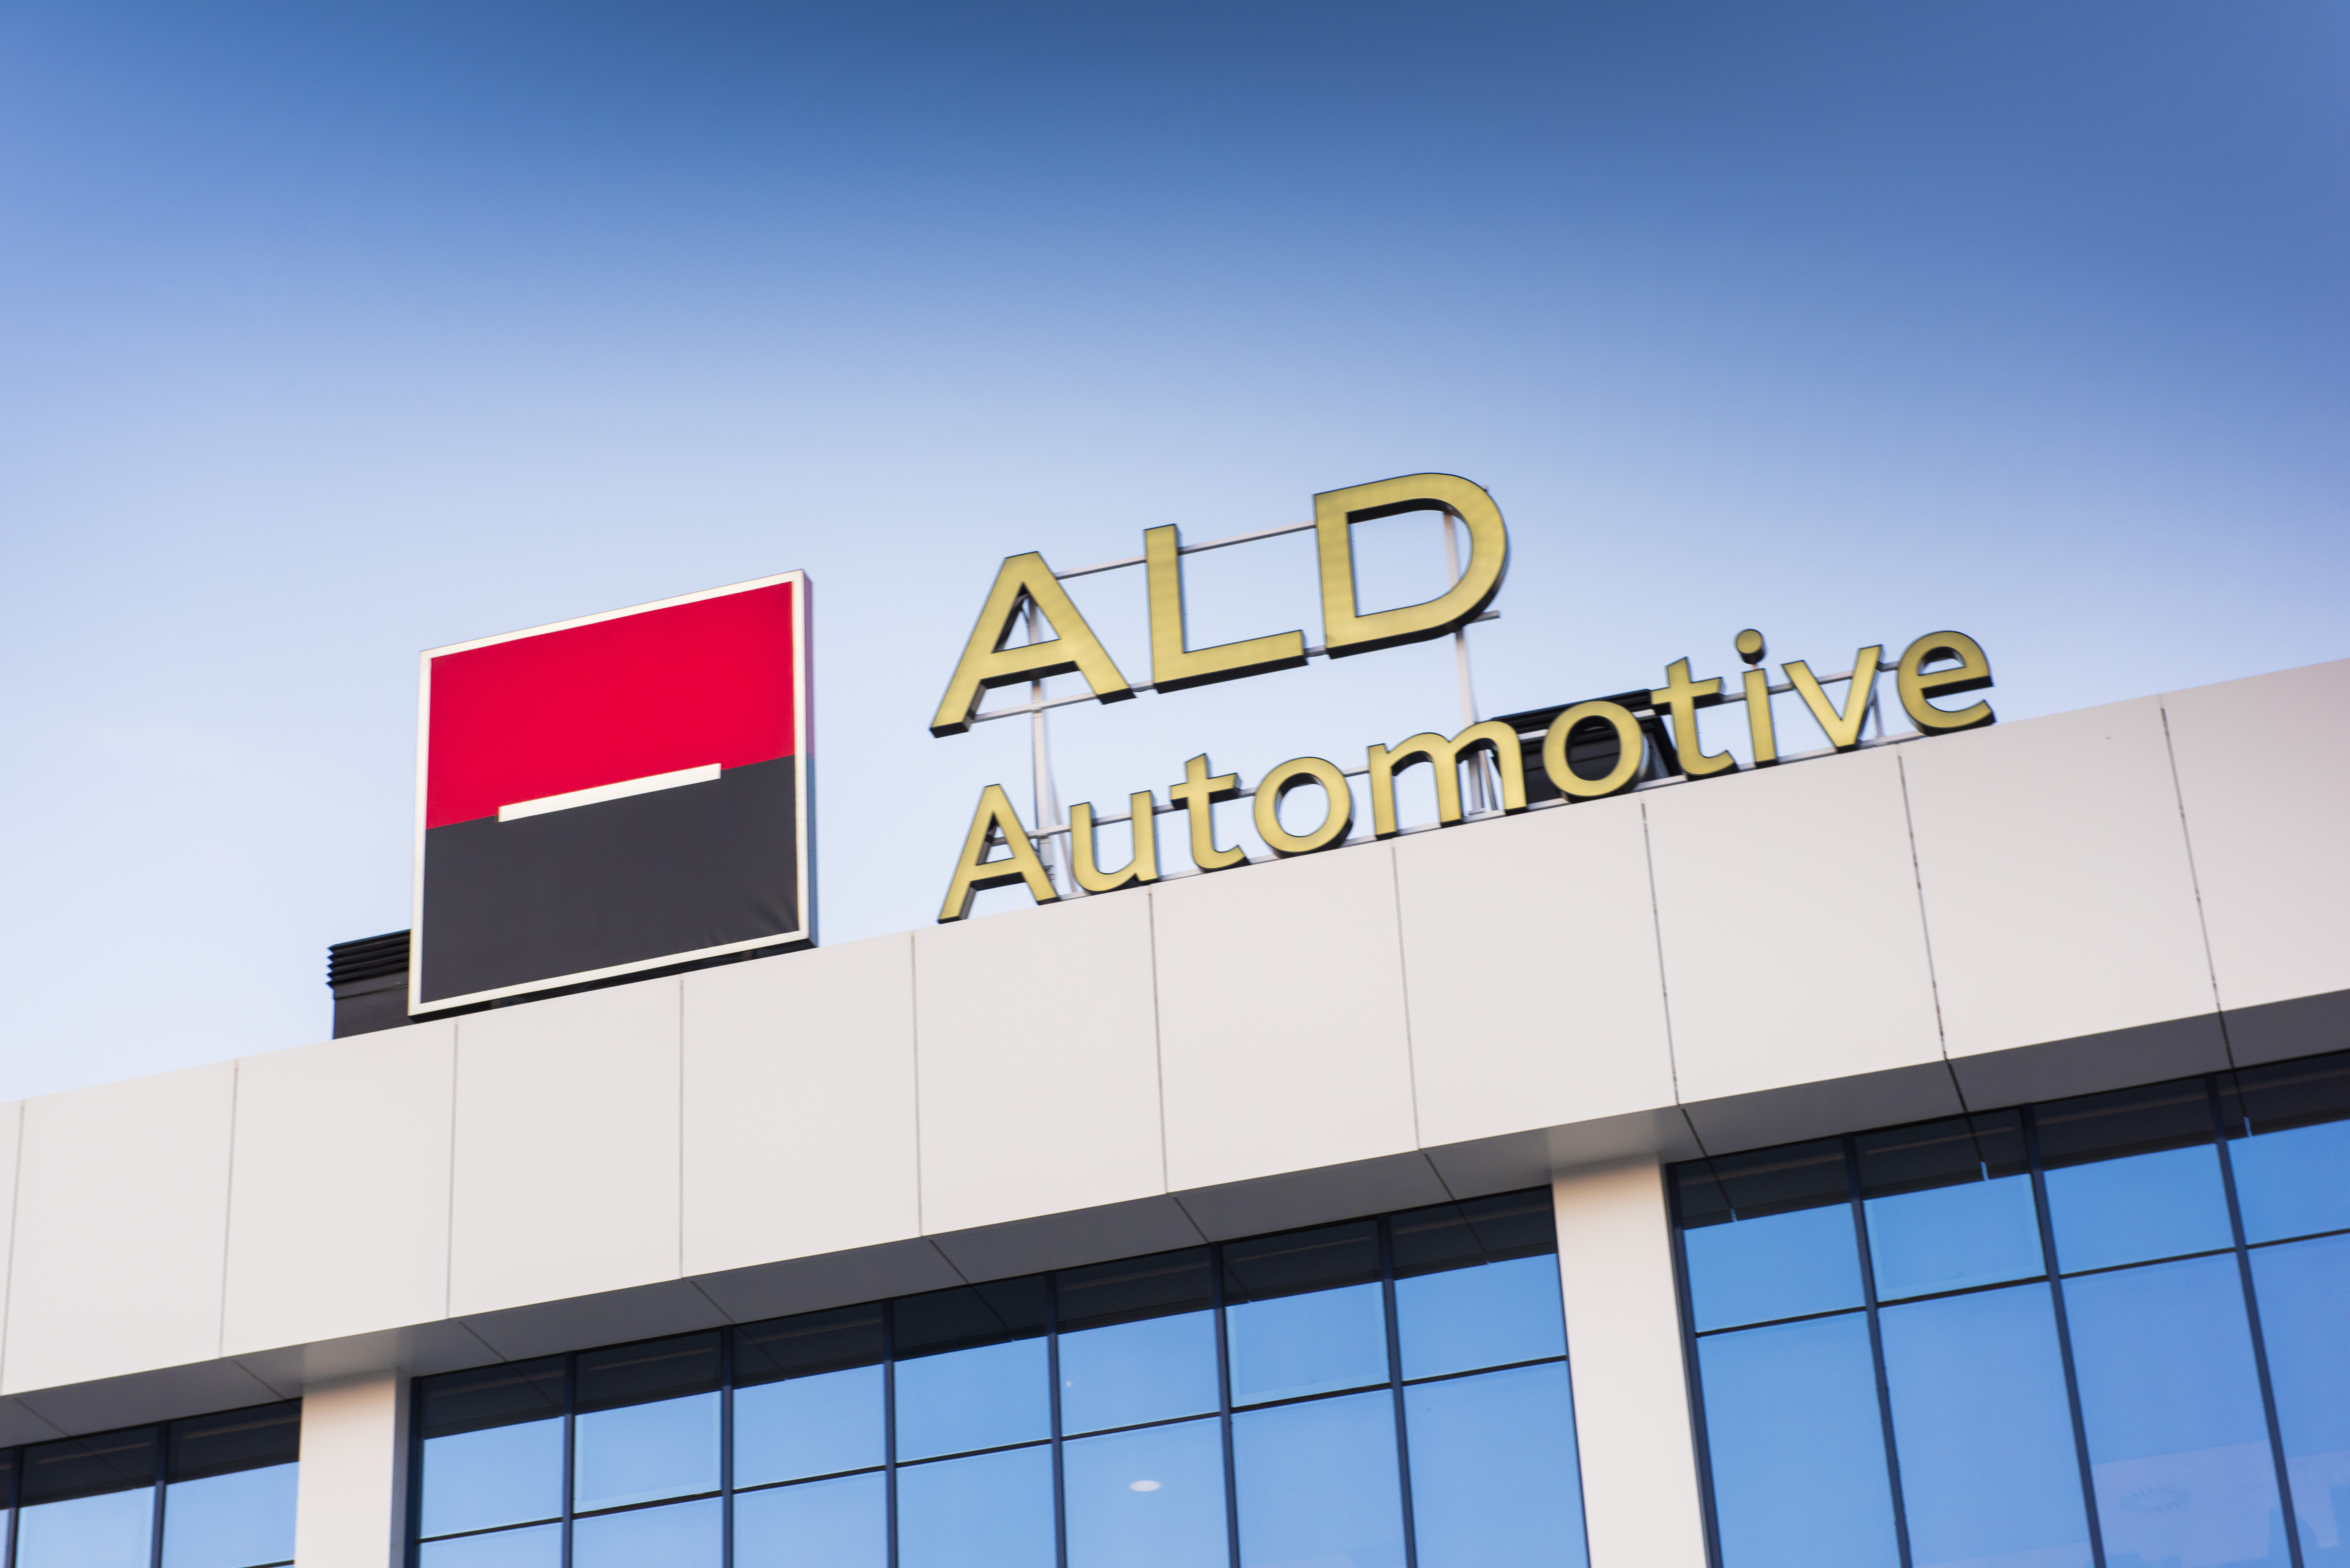 ALD Automotive gestiona ya más de 1.300.000 vehículos en todo el mundo